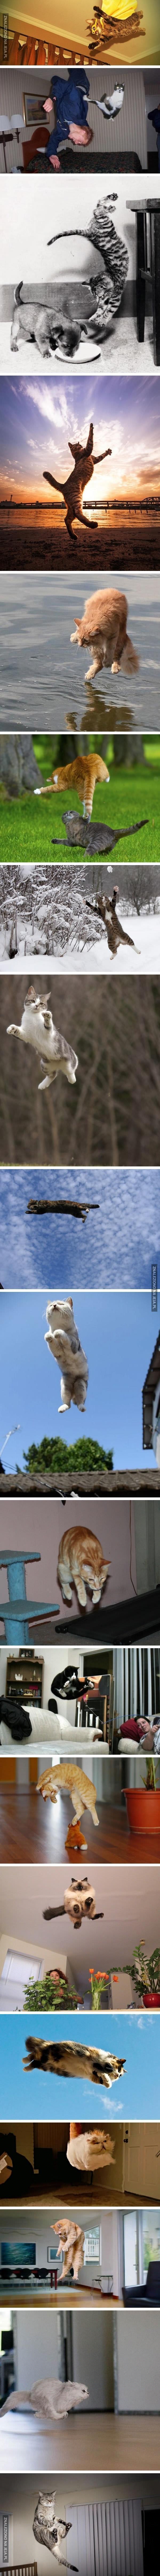 Lewitujące koty, lewitujące koty wszędzie!